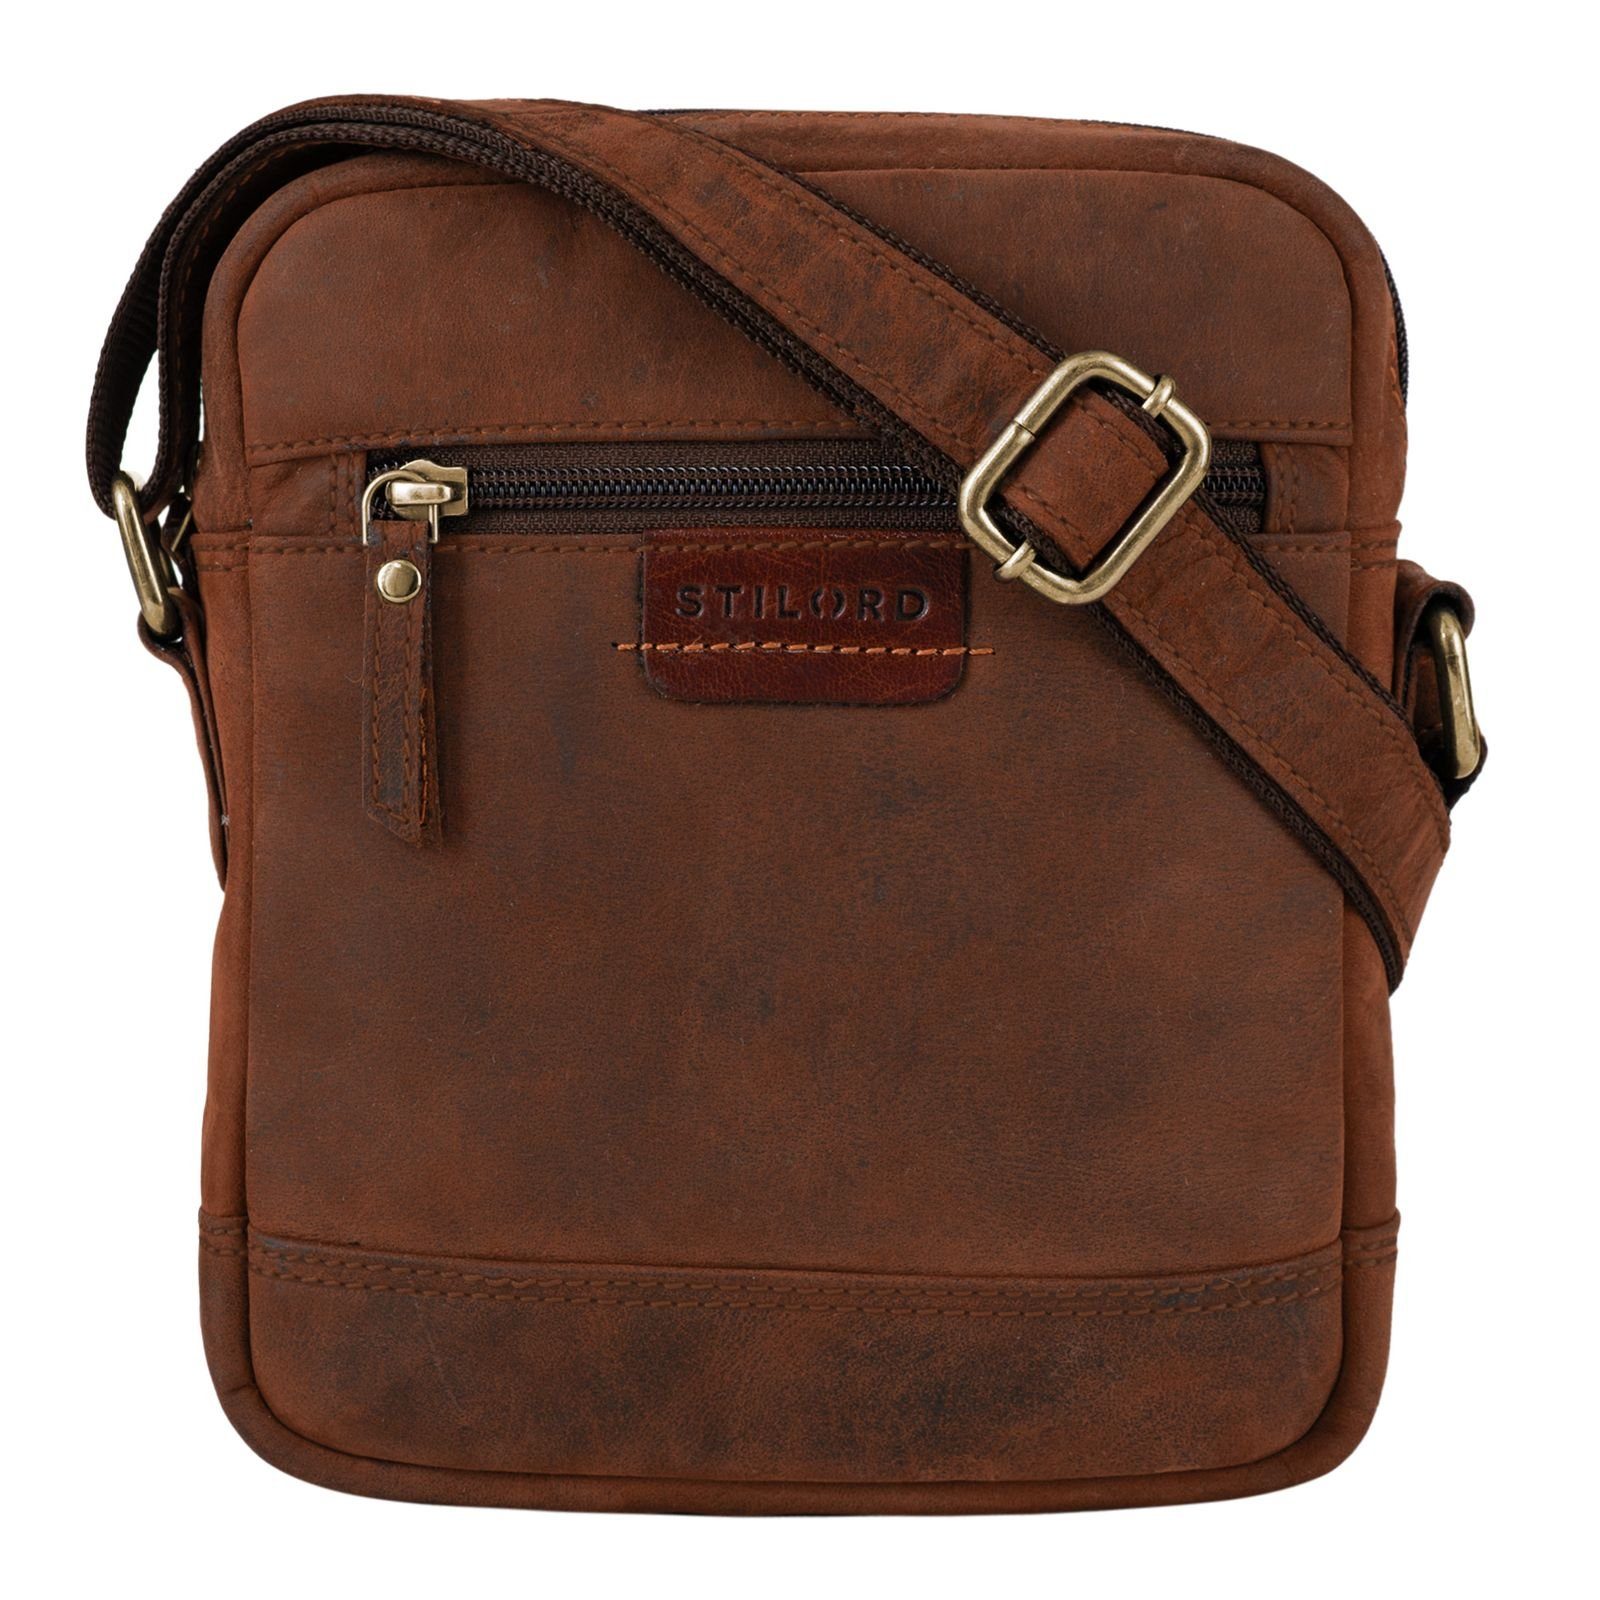 Vintage zum - STILORD braun Leder Messenger Umhängen sepia Tasche Bag "Brian"